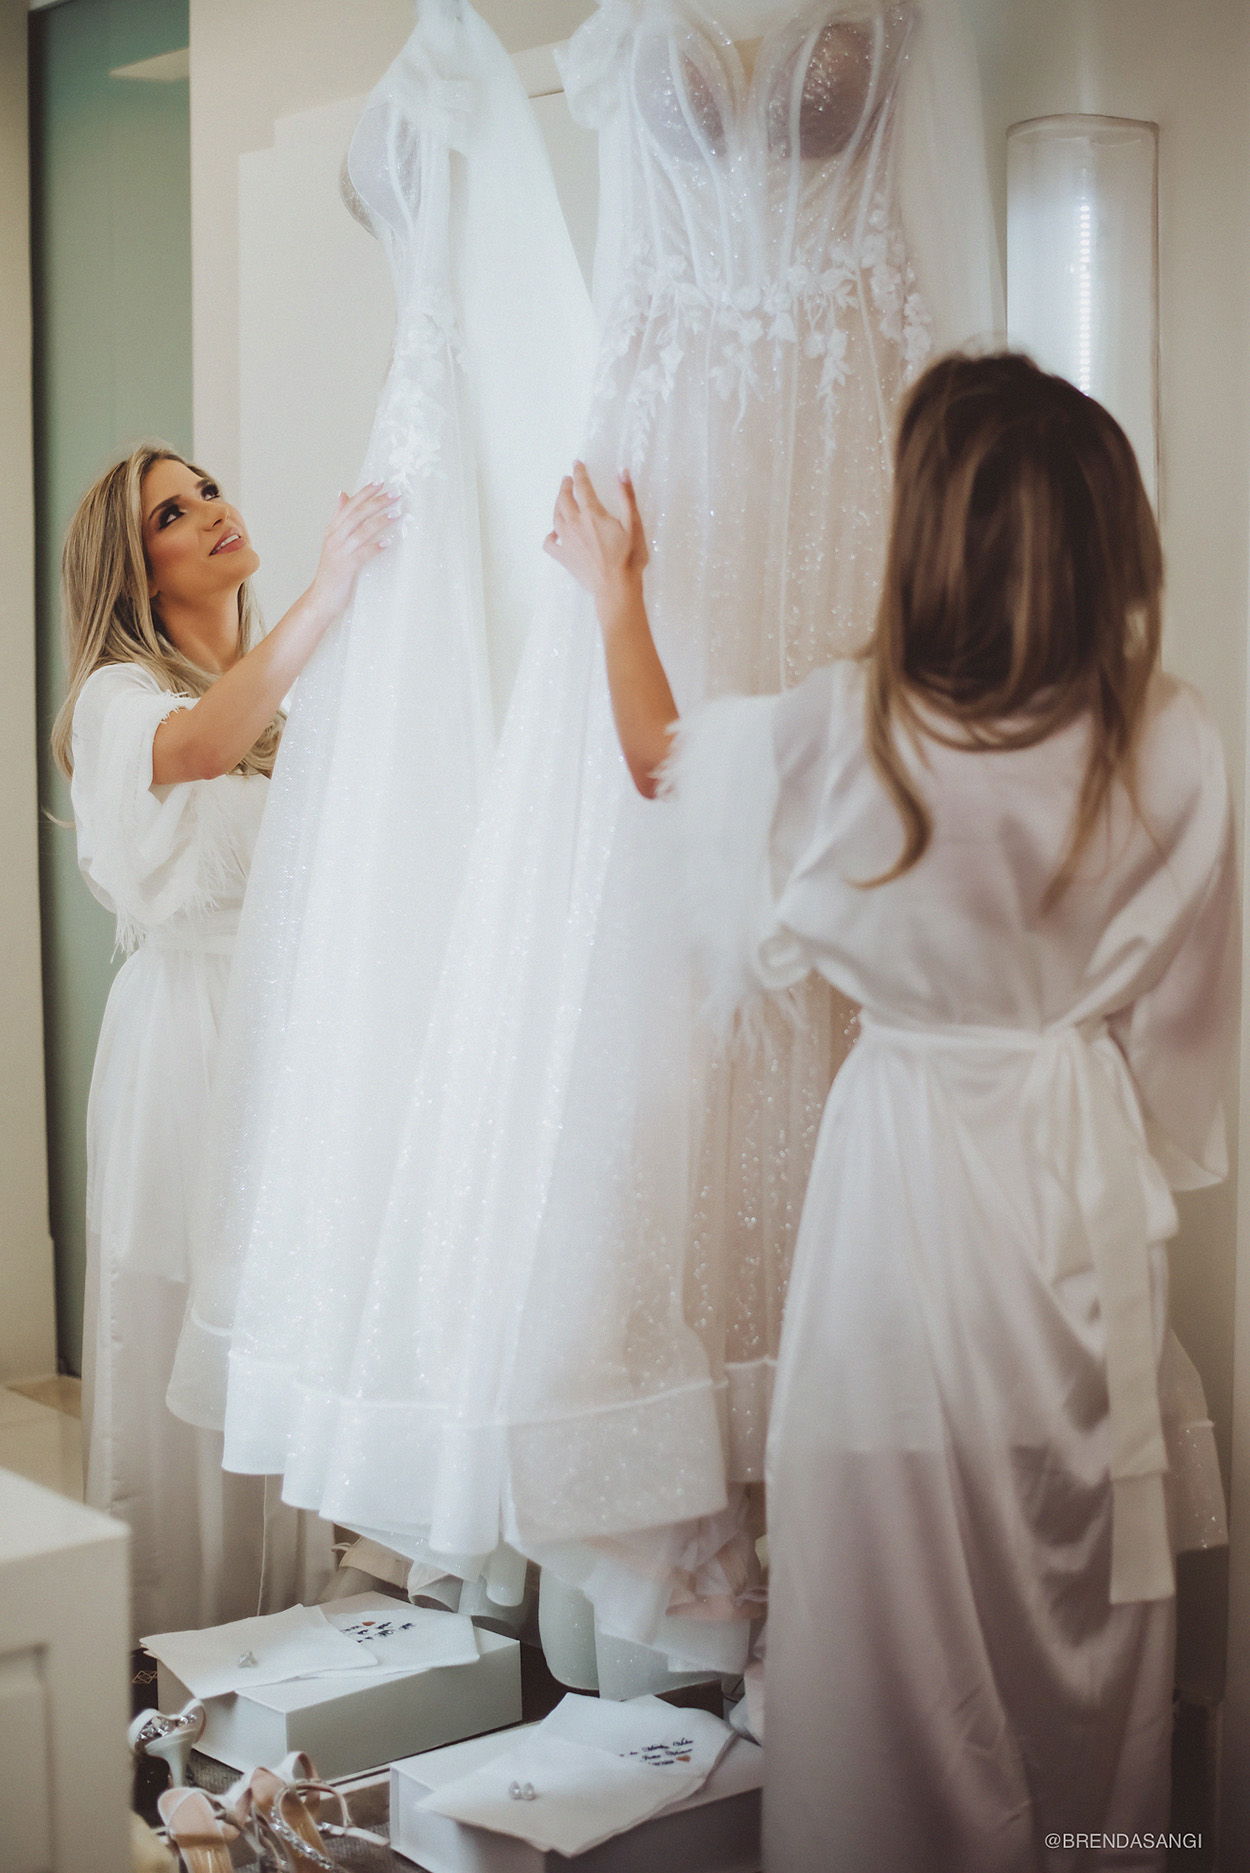 Noiva olhando seu vestido branco